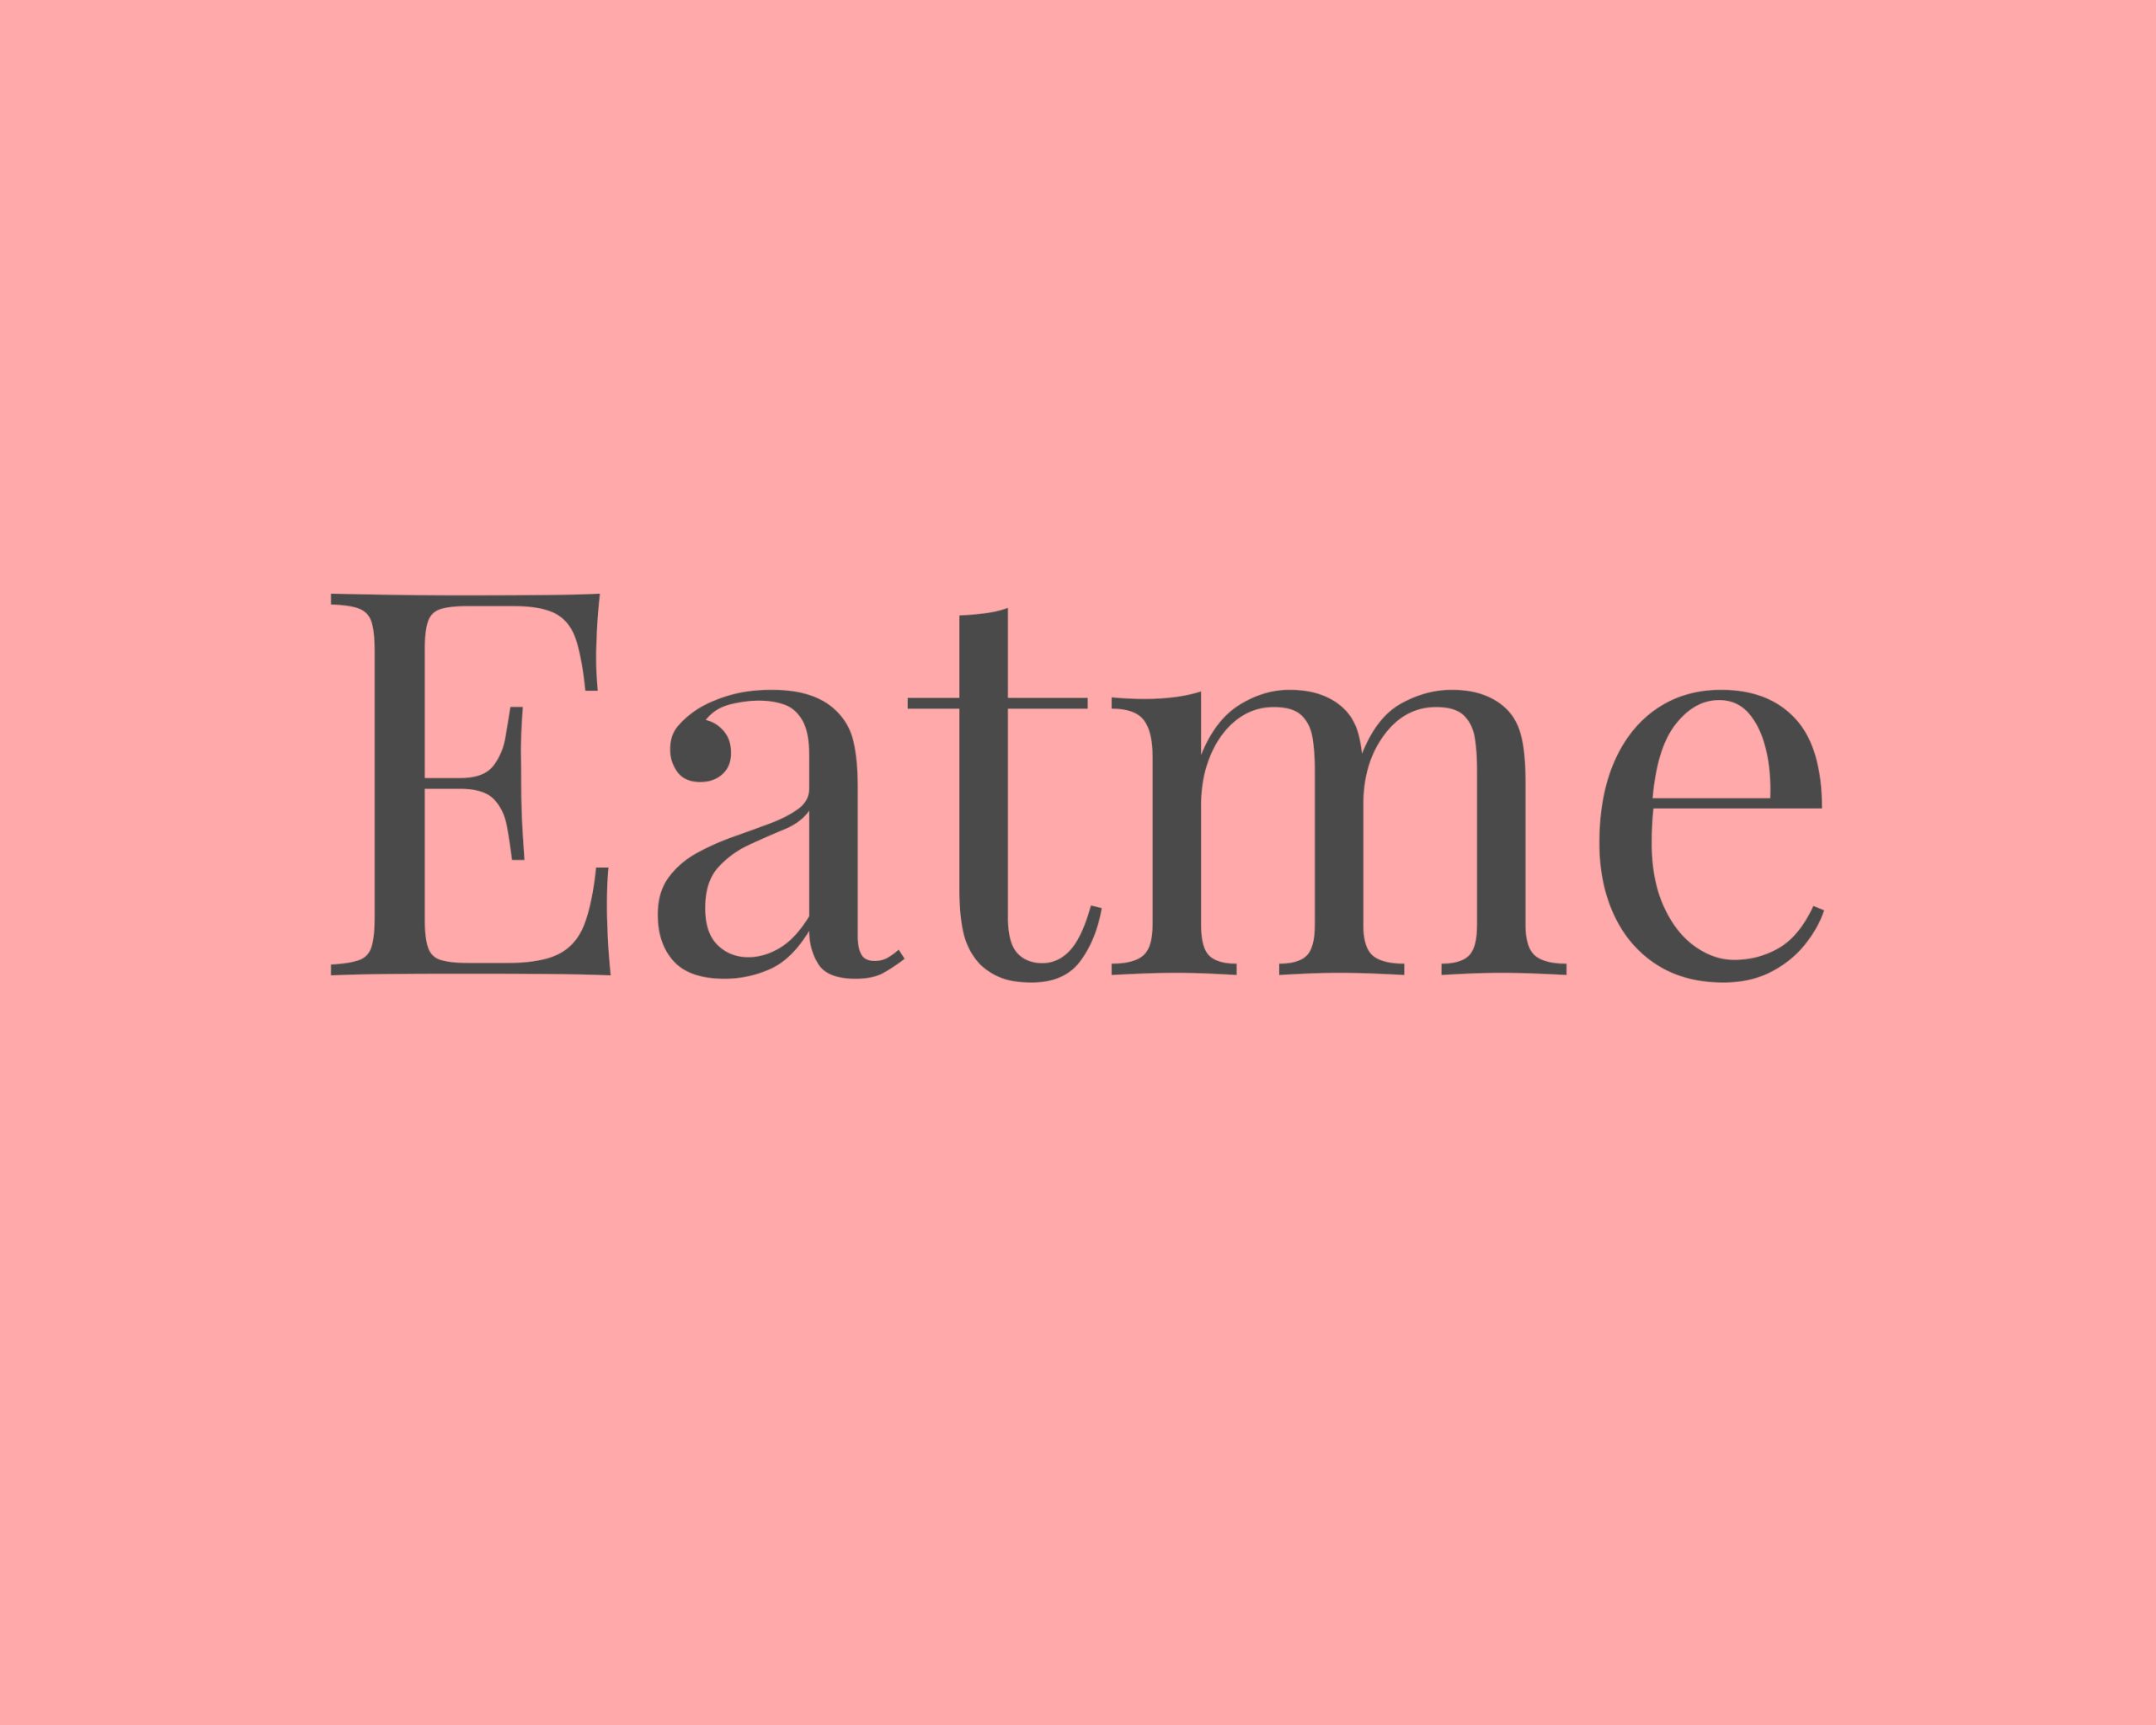 Eatme